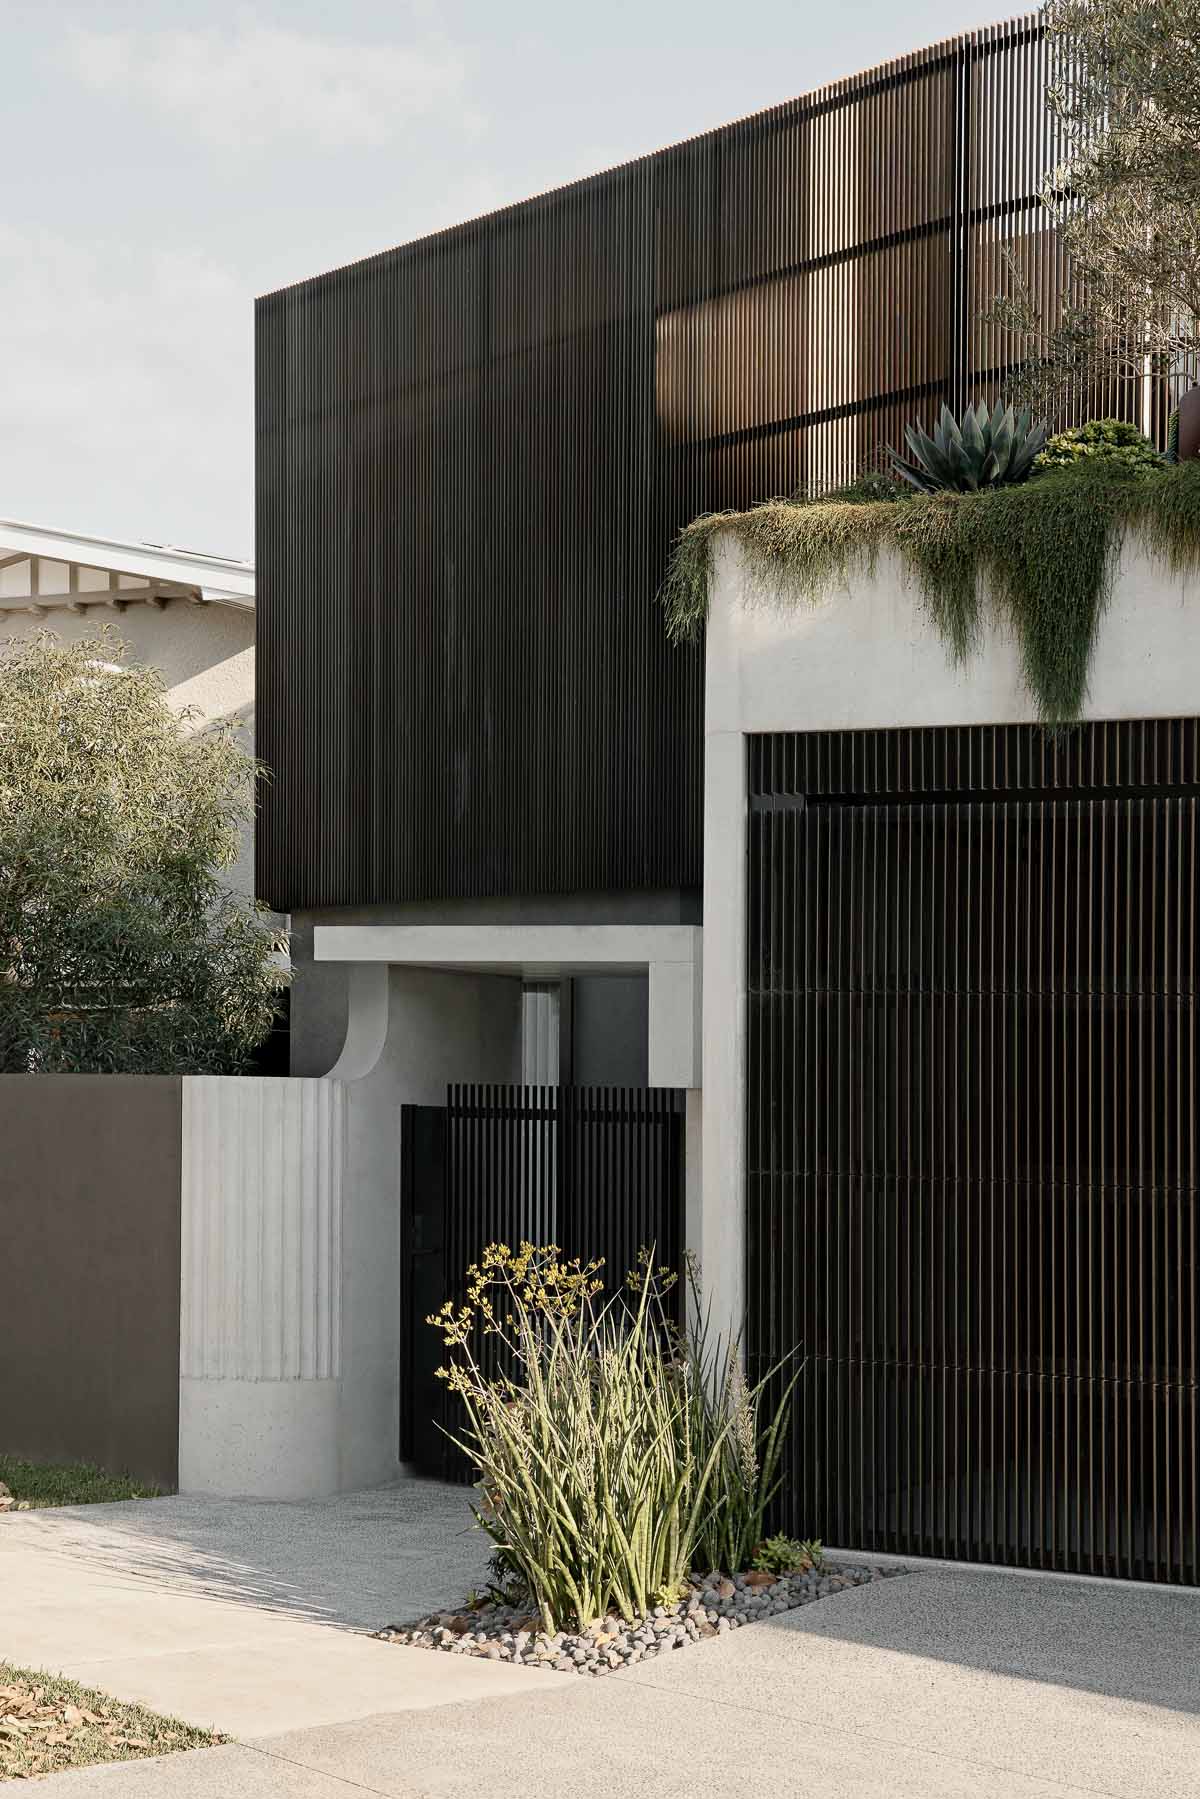 Shaun Lockyer Architects,别墅设计案例,别墅设计方案,庭院别墅,澳大利亚,建筑改造,别墅改造